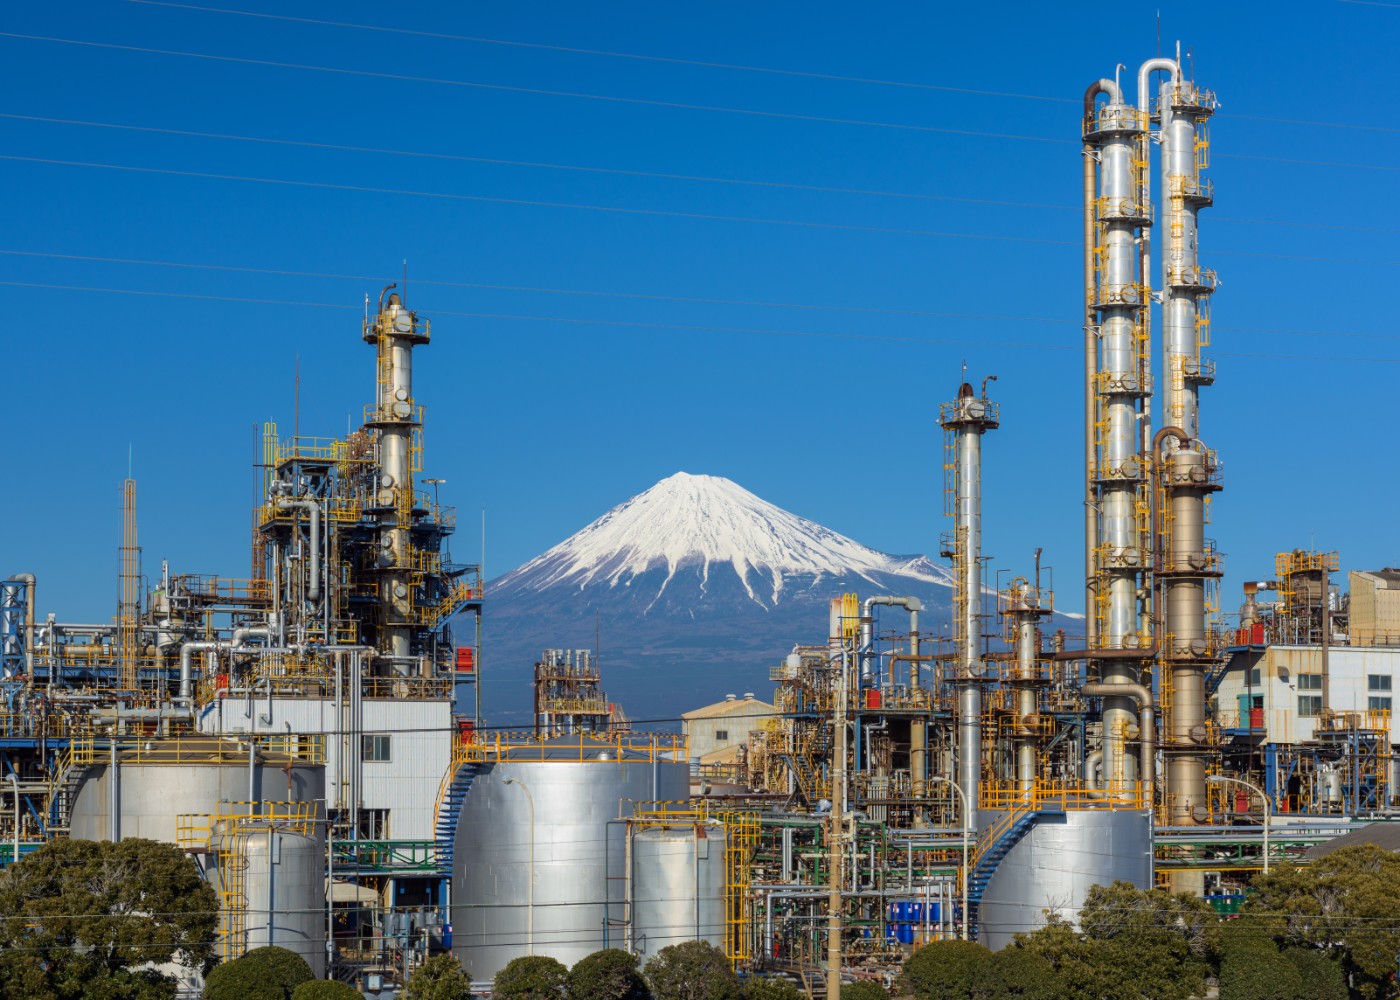 日本の化学を支えている三菱ケミカルホールディングスについて紹介します 工場 製造業求人ならジョブハウス 合格で1万円 正社員 派遣 アルバイト